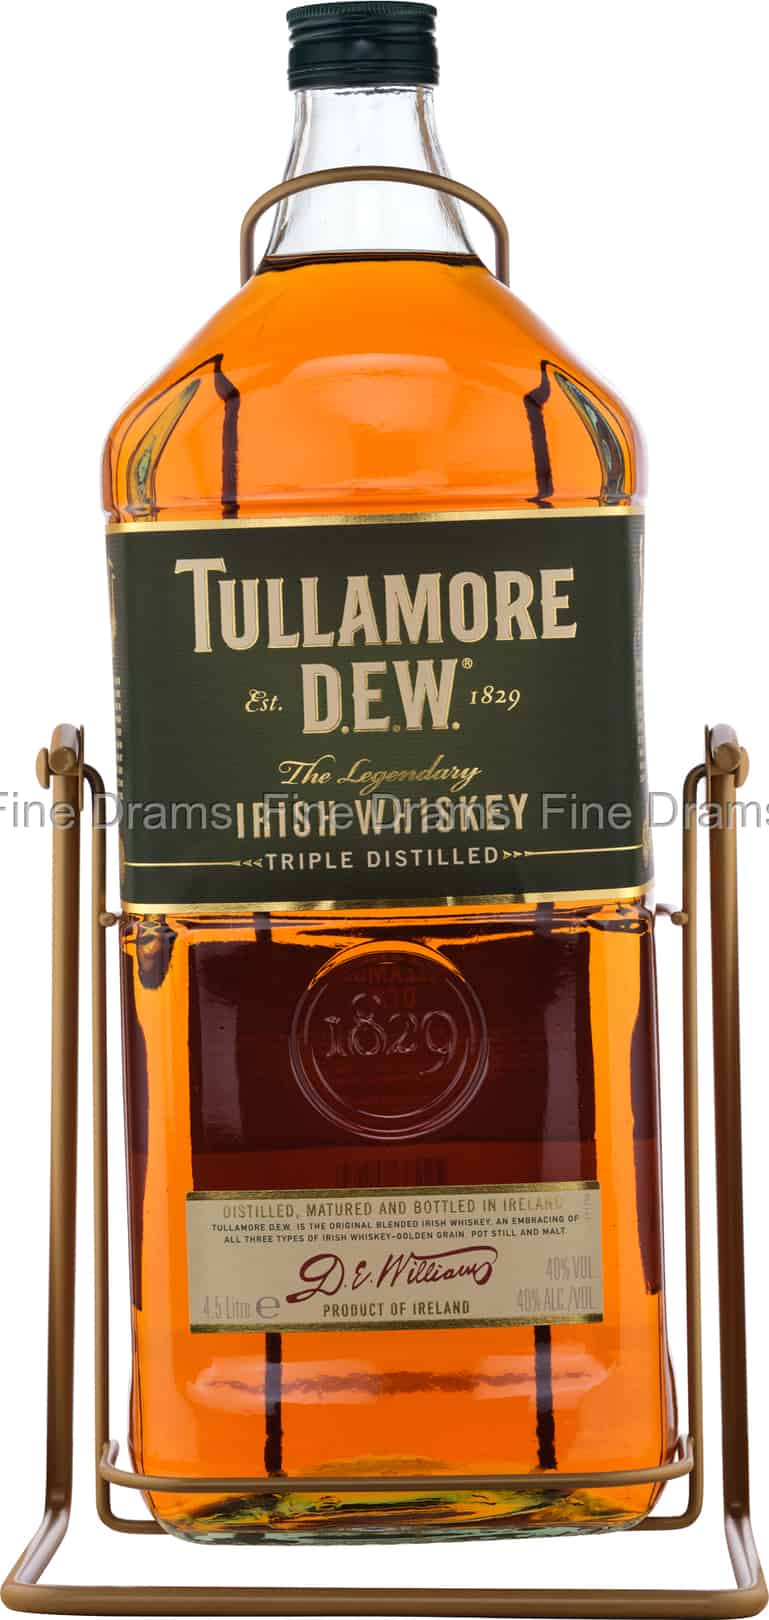 (4.5 Tullamore D.E.W. Whiskey Liter)